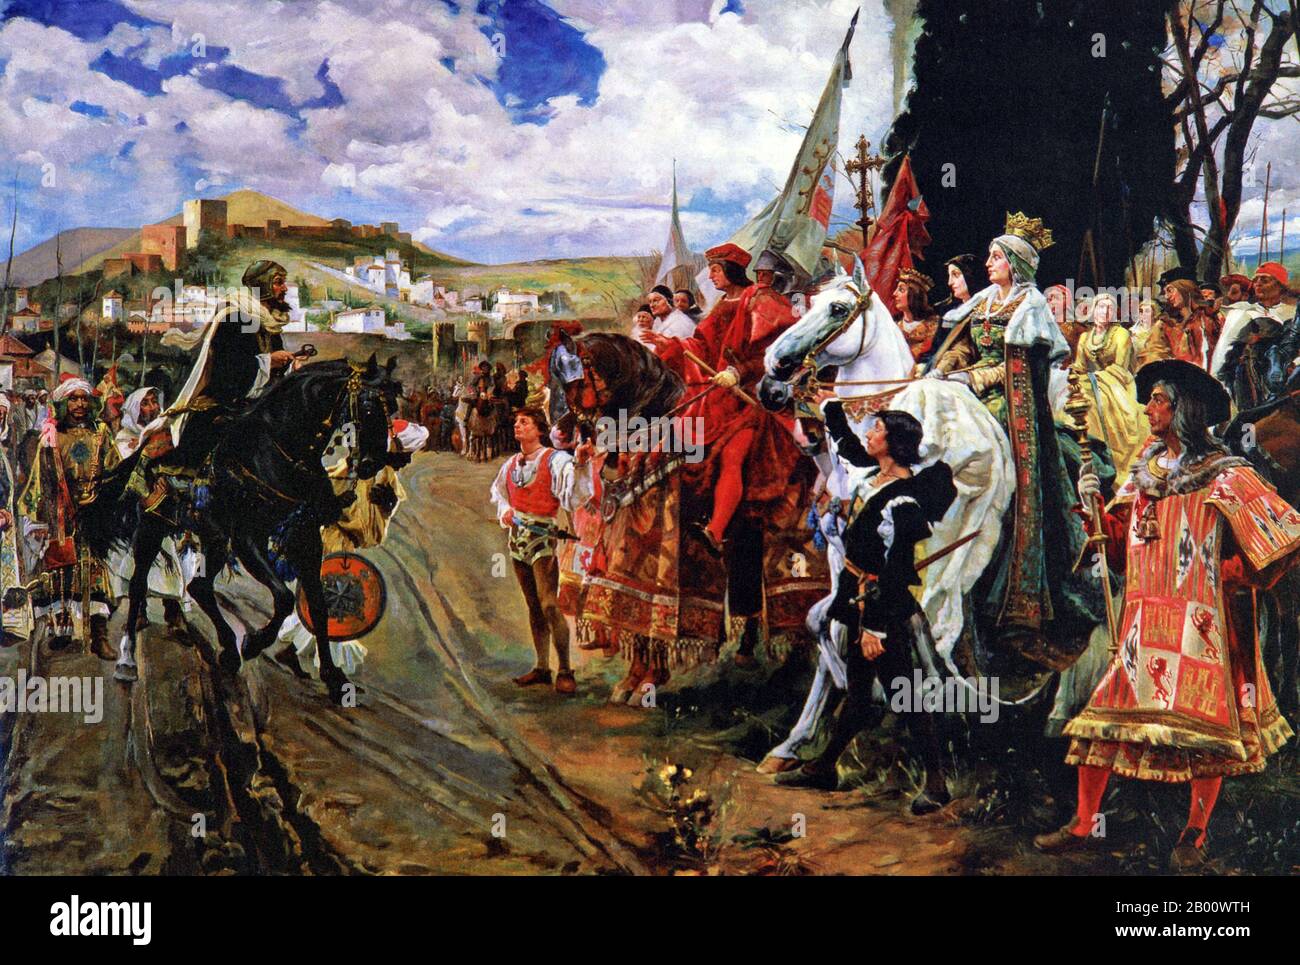 Spanien/Maghreb: "Die Kapitulation von Granada". Öl auf Leinwand Gemälde von Francisco Pradilla Ortiz (1848-1921), 1882 Abu 'abd-Allah Muhammad XII (c. 1460- c. 1533), bekannt als Boabdil, war der 22. Und letzte Nasridenherrscher von Granada. Im Jahre 1491 wurde Muhammad XII. Von Ferdinand und Isabella zur Kapitulation der Stadt Granada aufgefordert, und auf seine Weigerung wurde es von den Kastiliern belagert. Schließlich, am 2. Januar 1492, wurde Granada aufgegeben. Boabdil übergab Ferdinand die Schlüssel von Granada an den Ufern des Genil, was das Ende der arabischen Herrschaft in Spanien markierte. Stockfoto